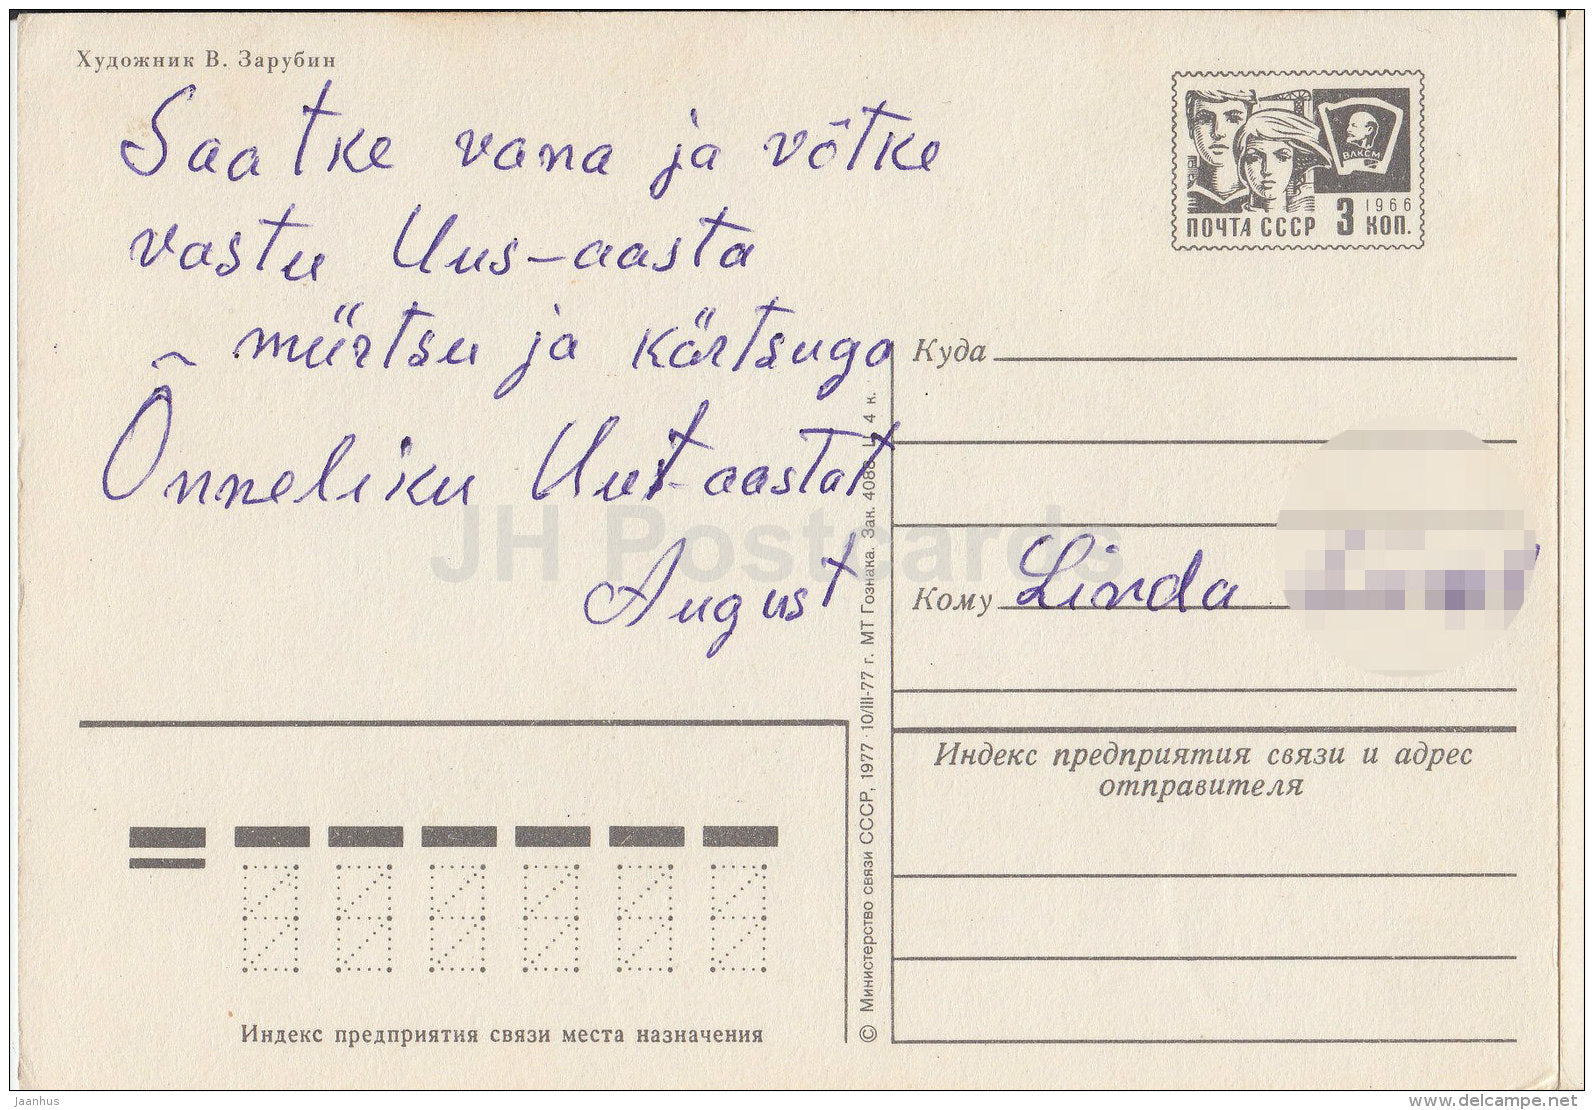 New Year Greeting Card by V. Zarubin - snowman - boy - boy - umbrella - postal stationery - 1977 - Russia USSR - used - JH Postcards